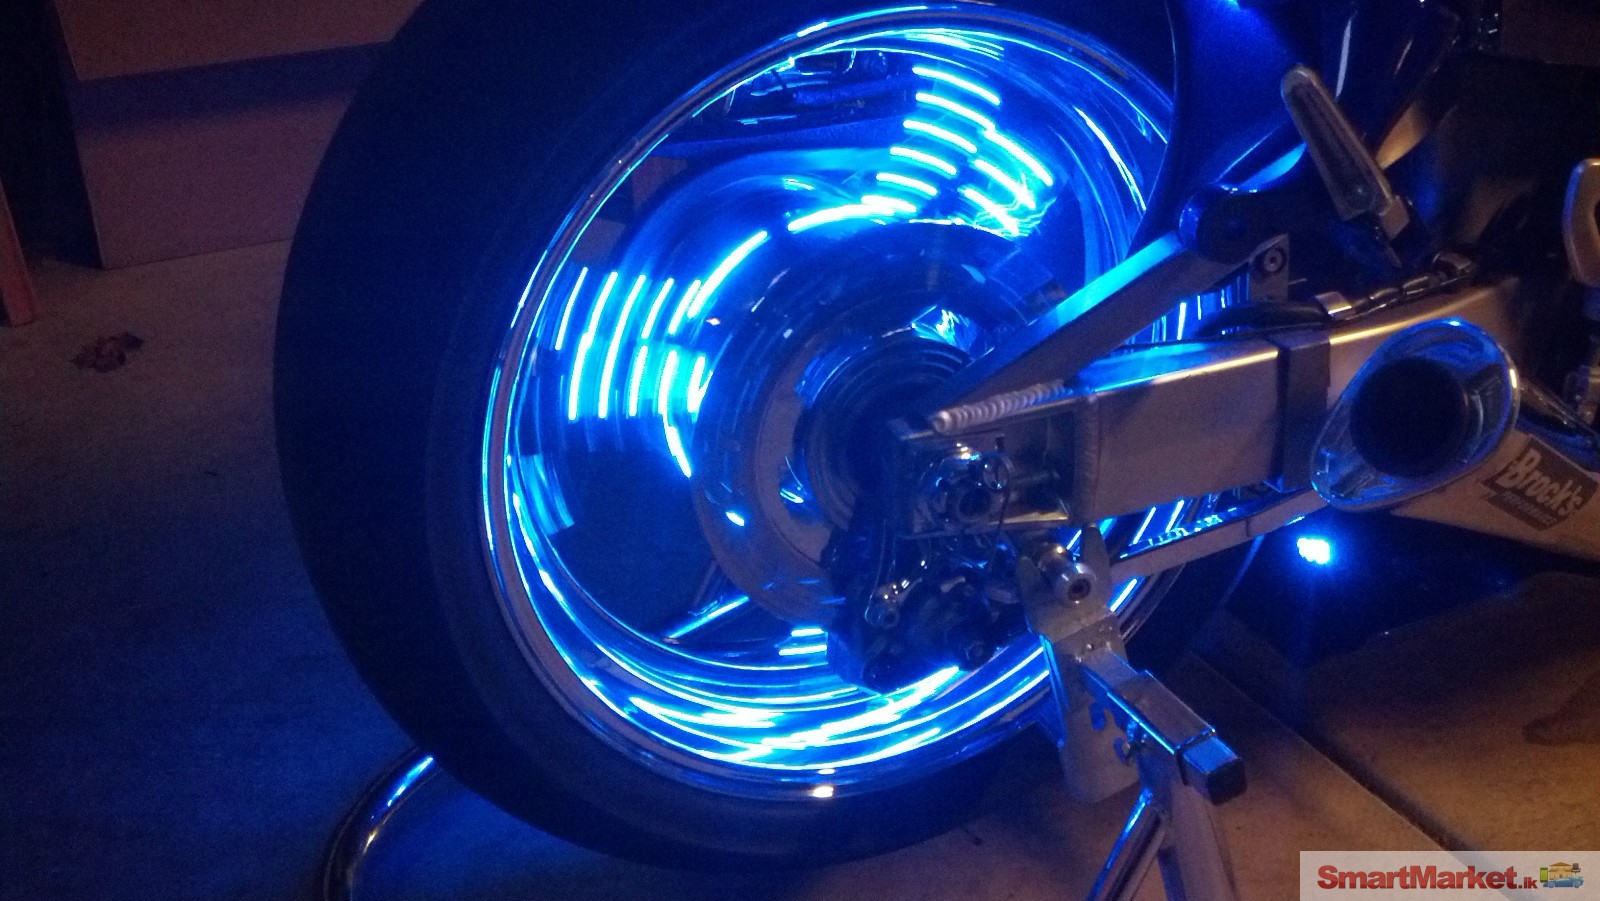 Waterproof Wheel Light